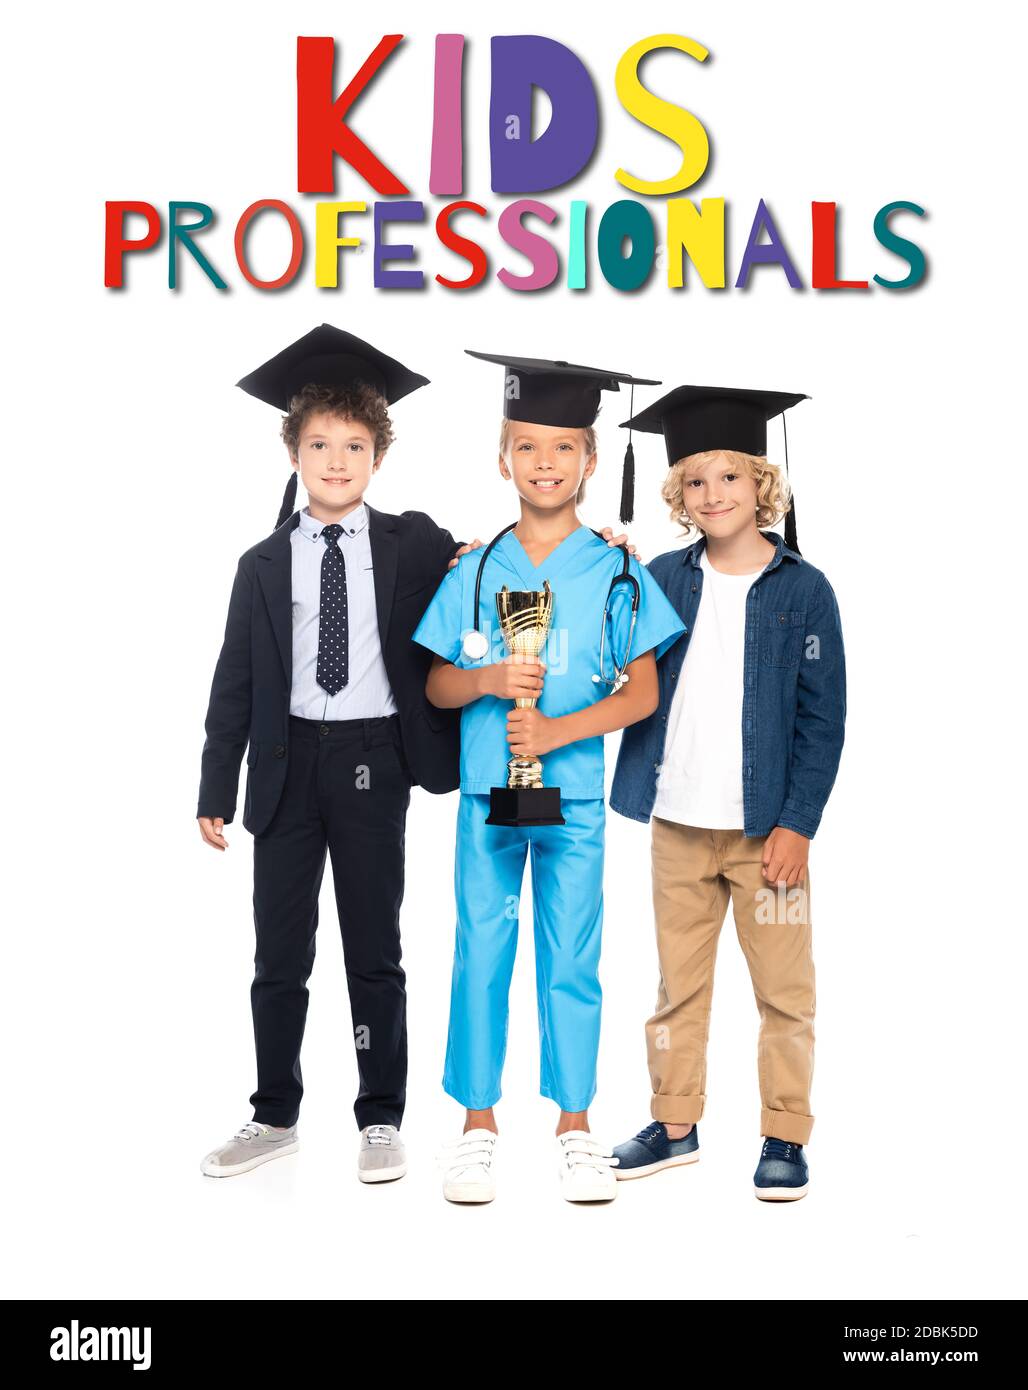 niños gorras de graduación vestidos con trajes de diferentes profesiones sosteniendo el trofeo de oro cerca de los niños profesionales que se aletían en blanco Fotografía de stock Alamy